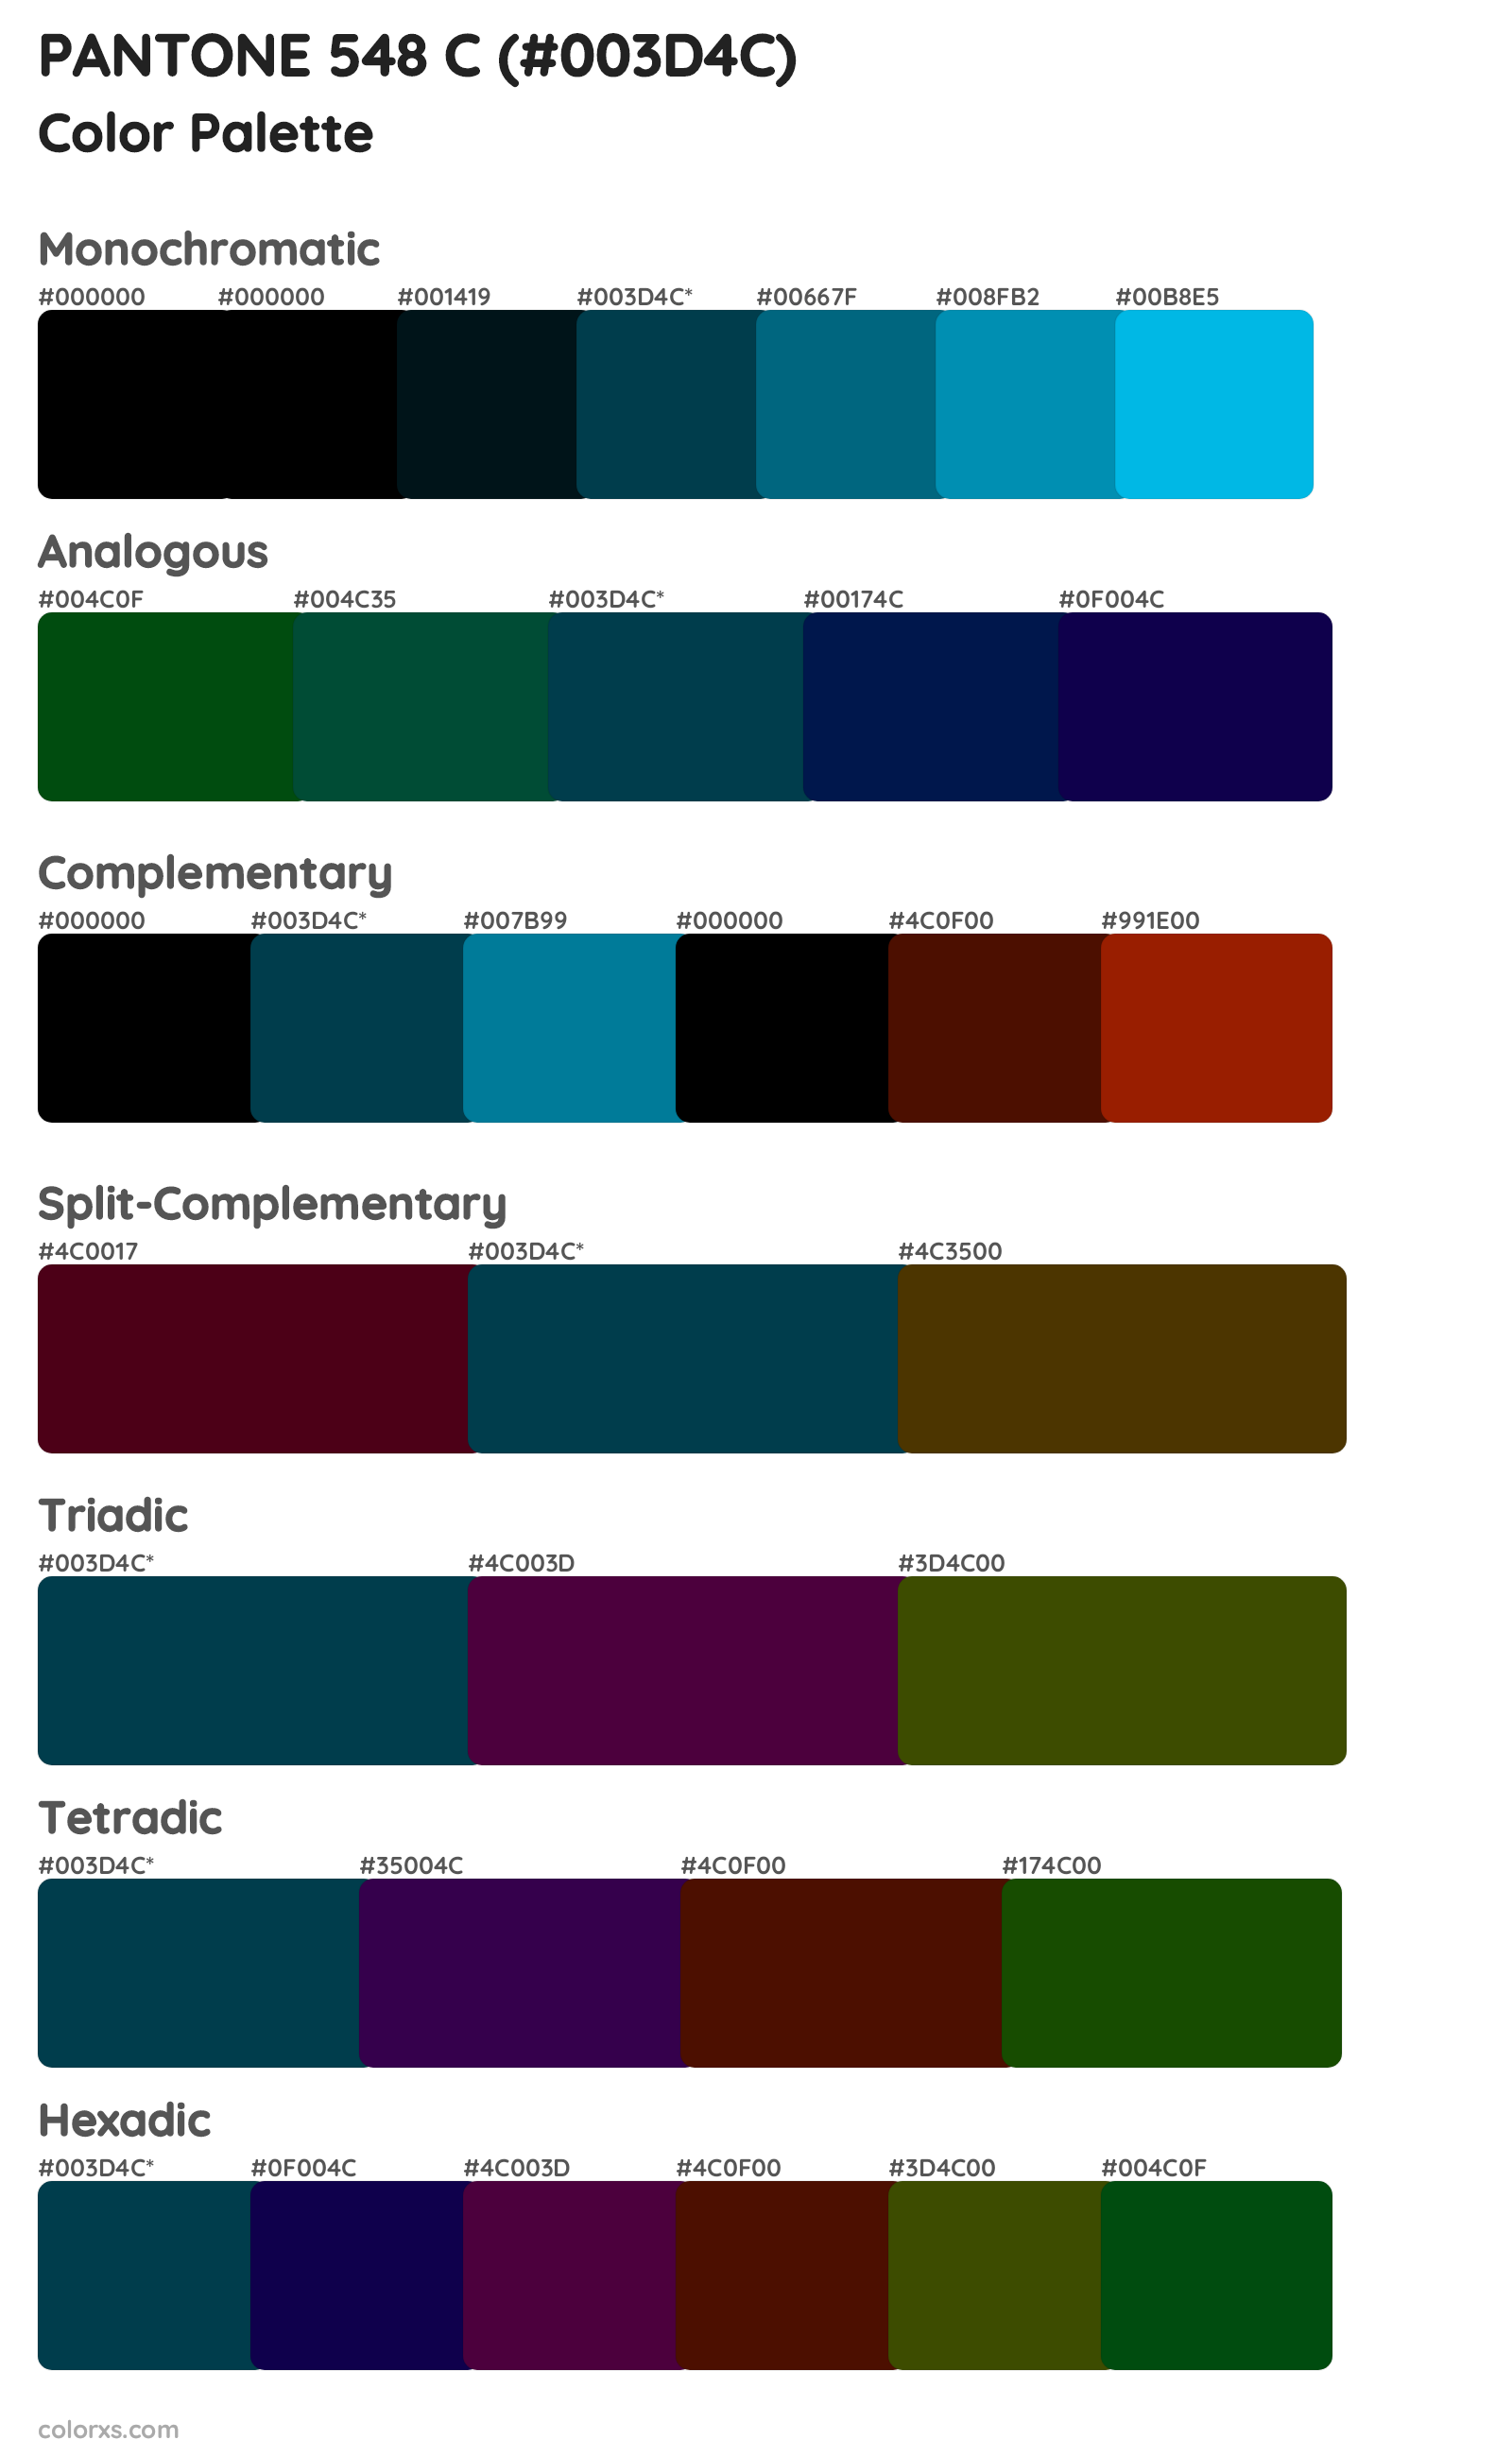 PANTONE 548 C Color Scheme Palettes